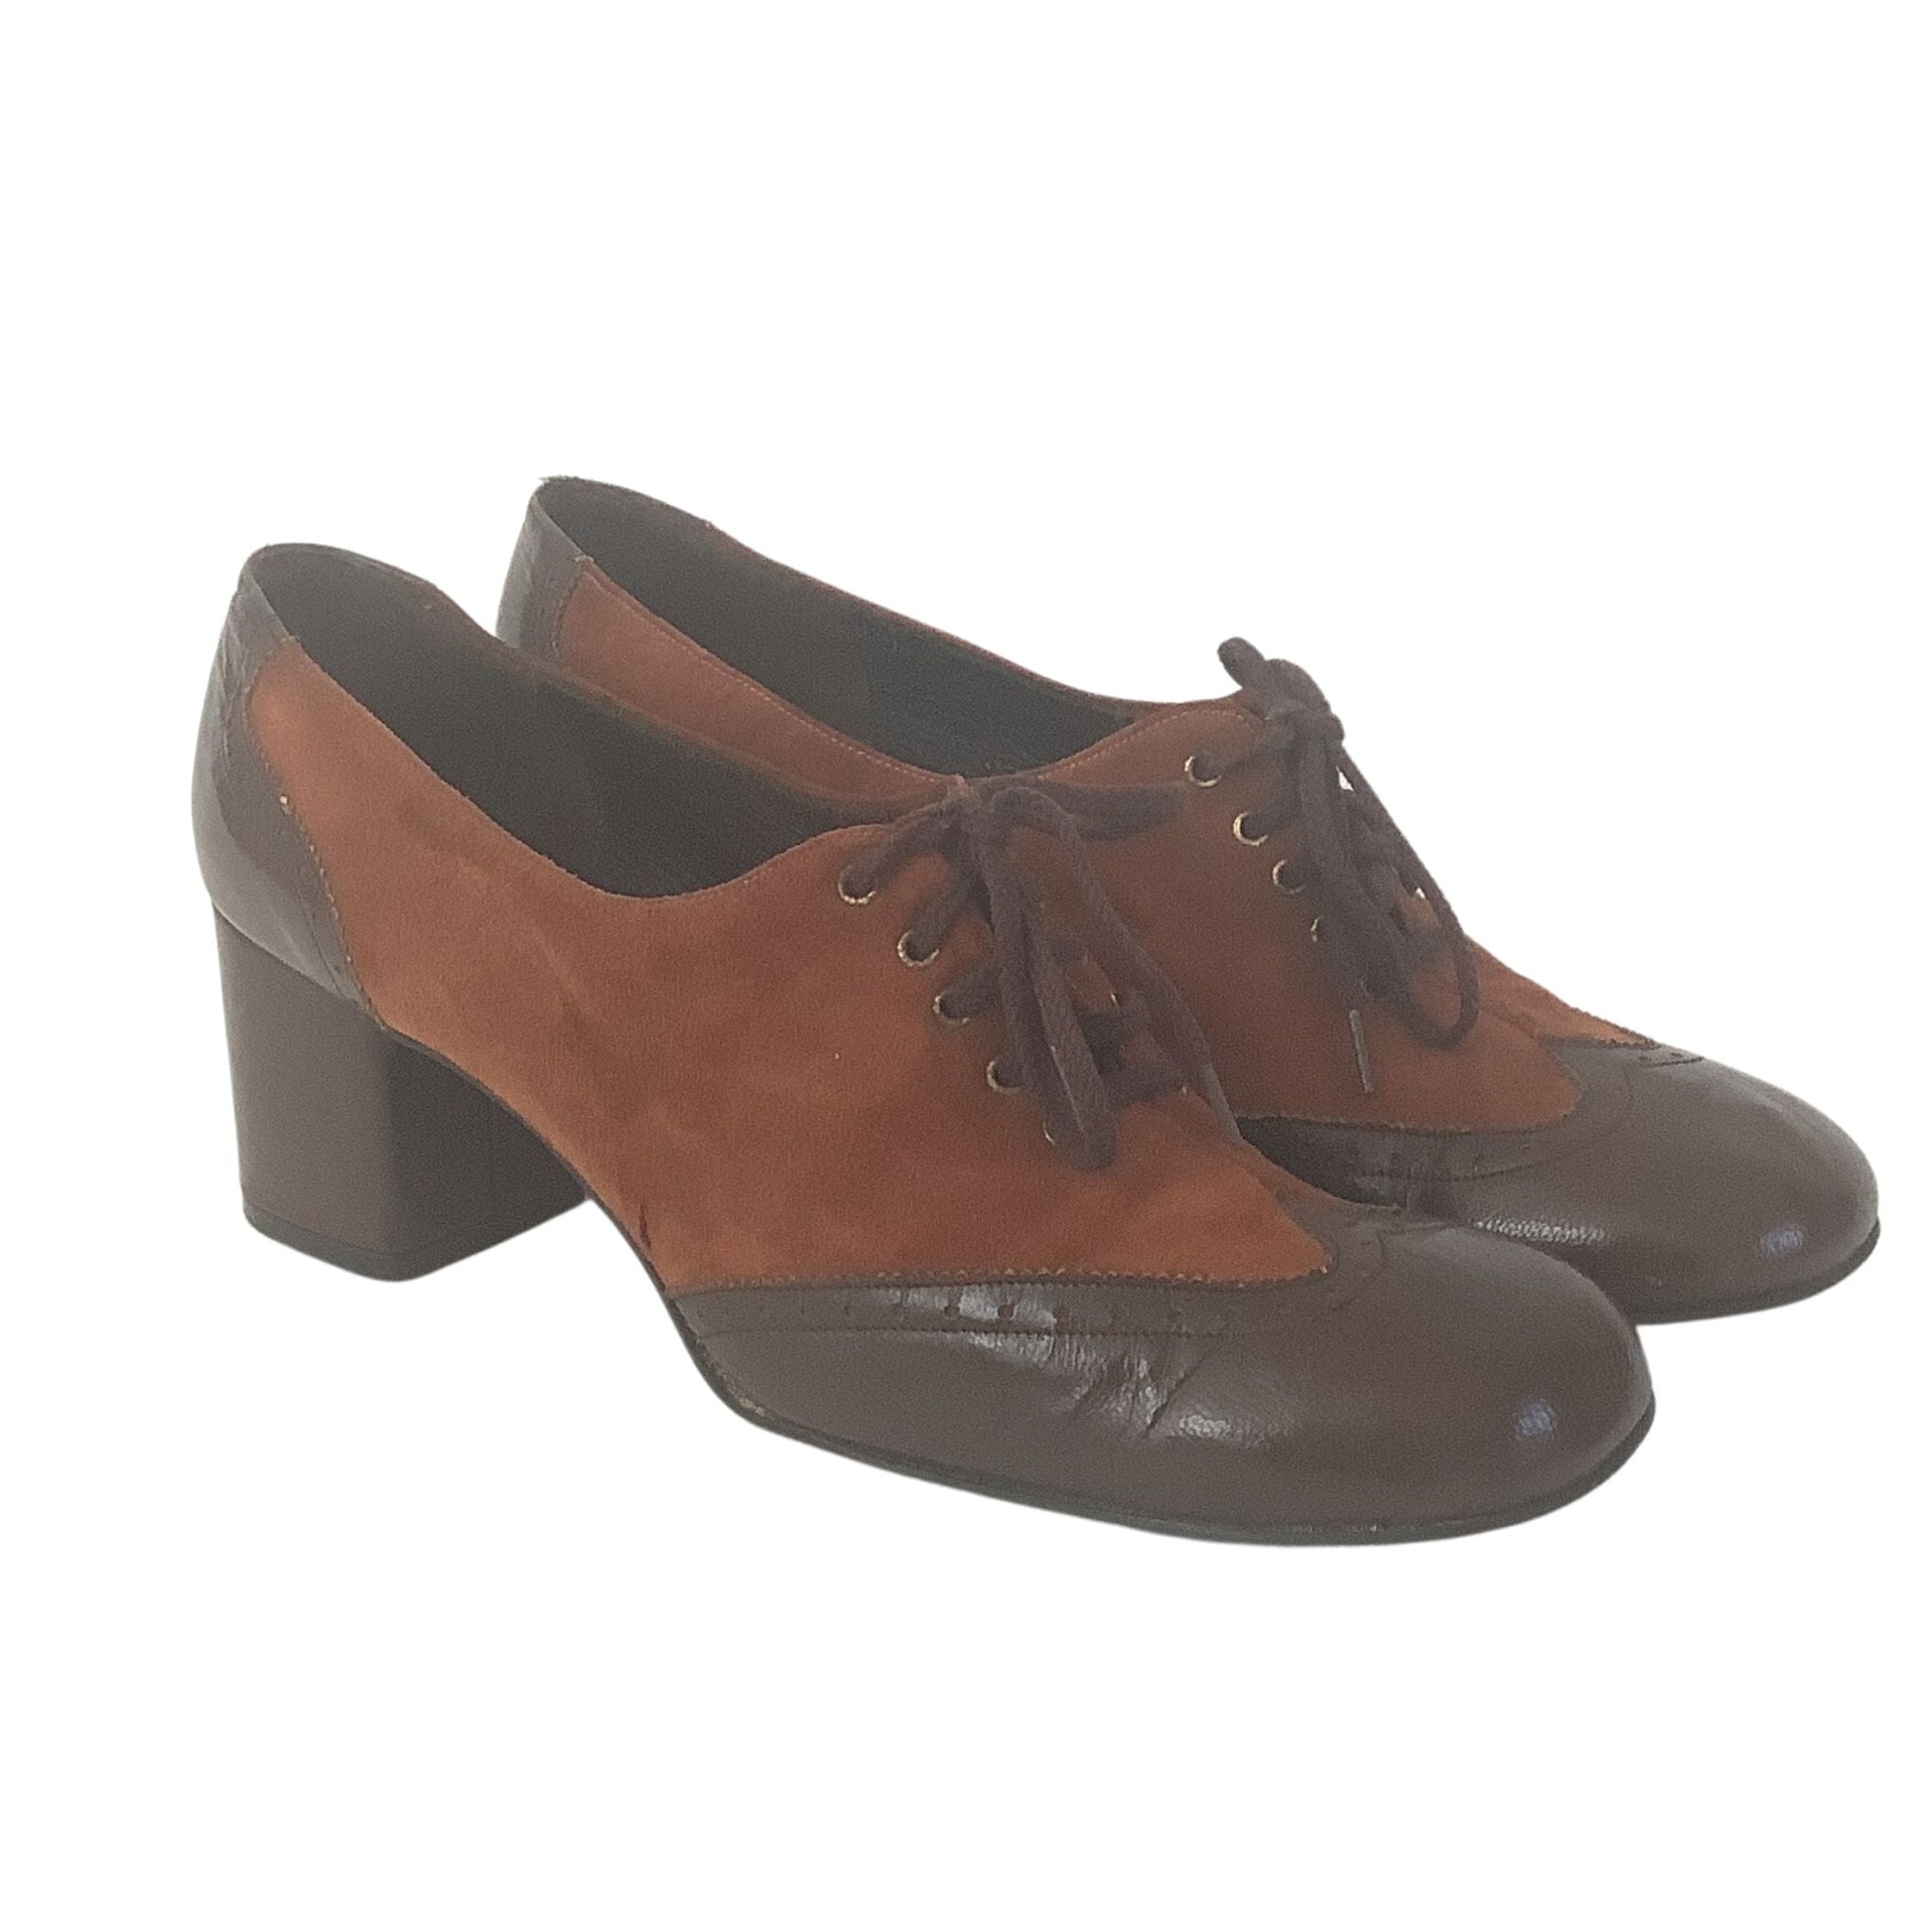 Vintage 1960s Laceup Heels 7.5 / Multi / Vintage 1960s